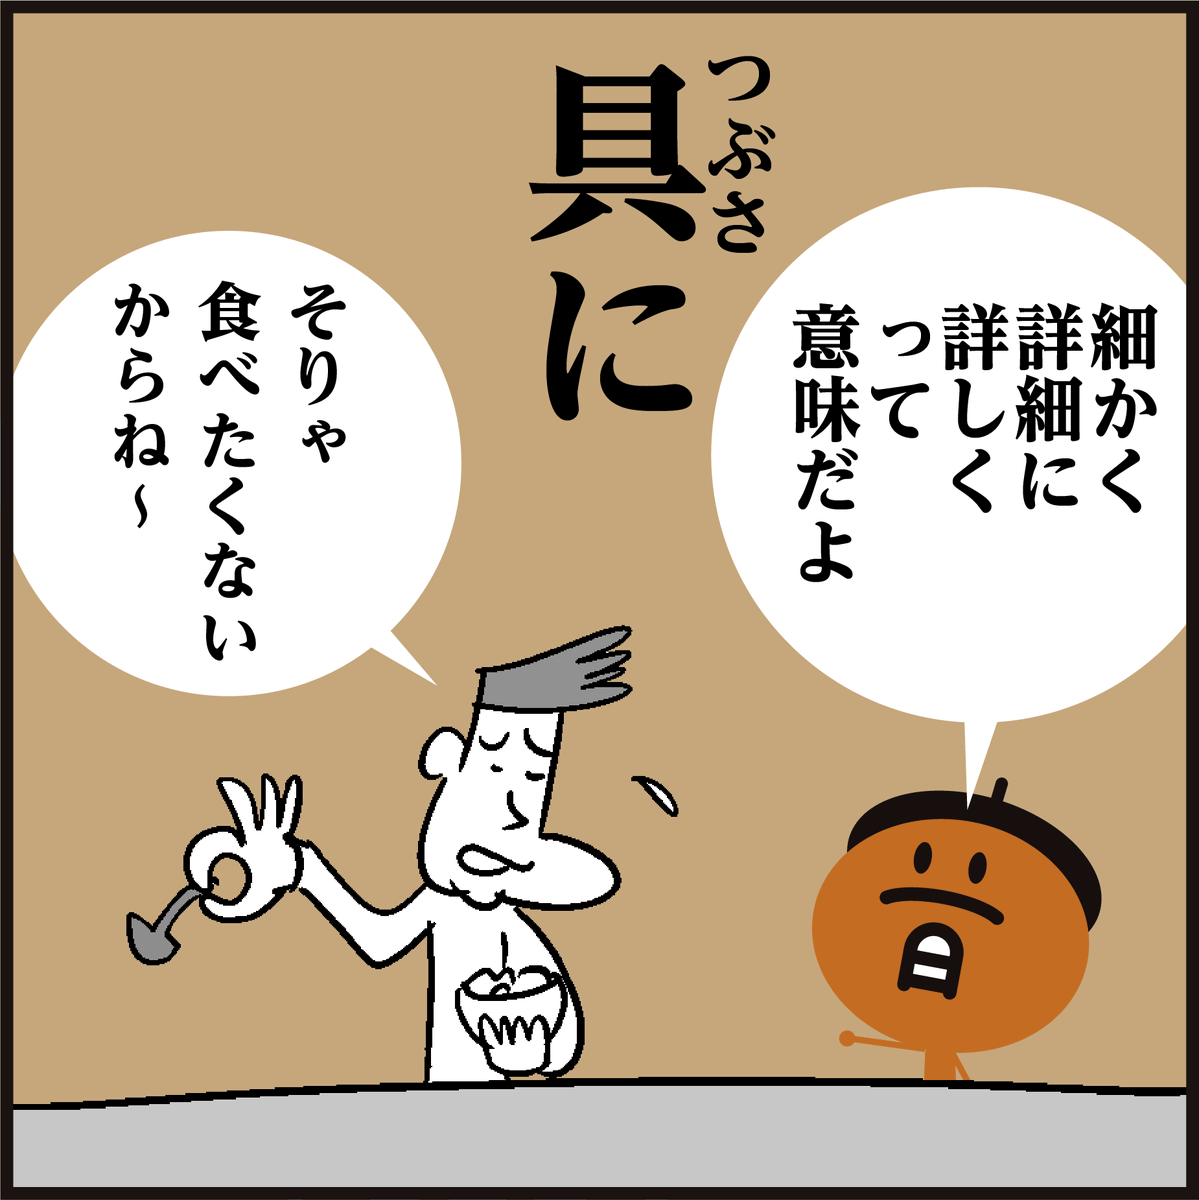 漢字【具に】←読めたらスゴいです!🤓 #4コマ漫画 #イラスト #クイズ #豆知識 #勉強 